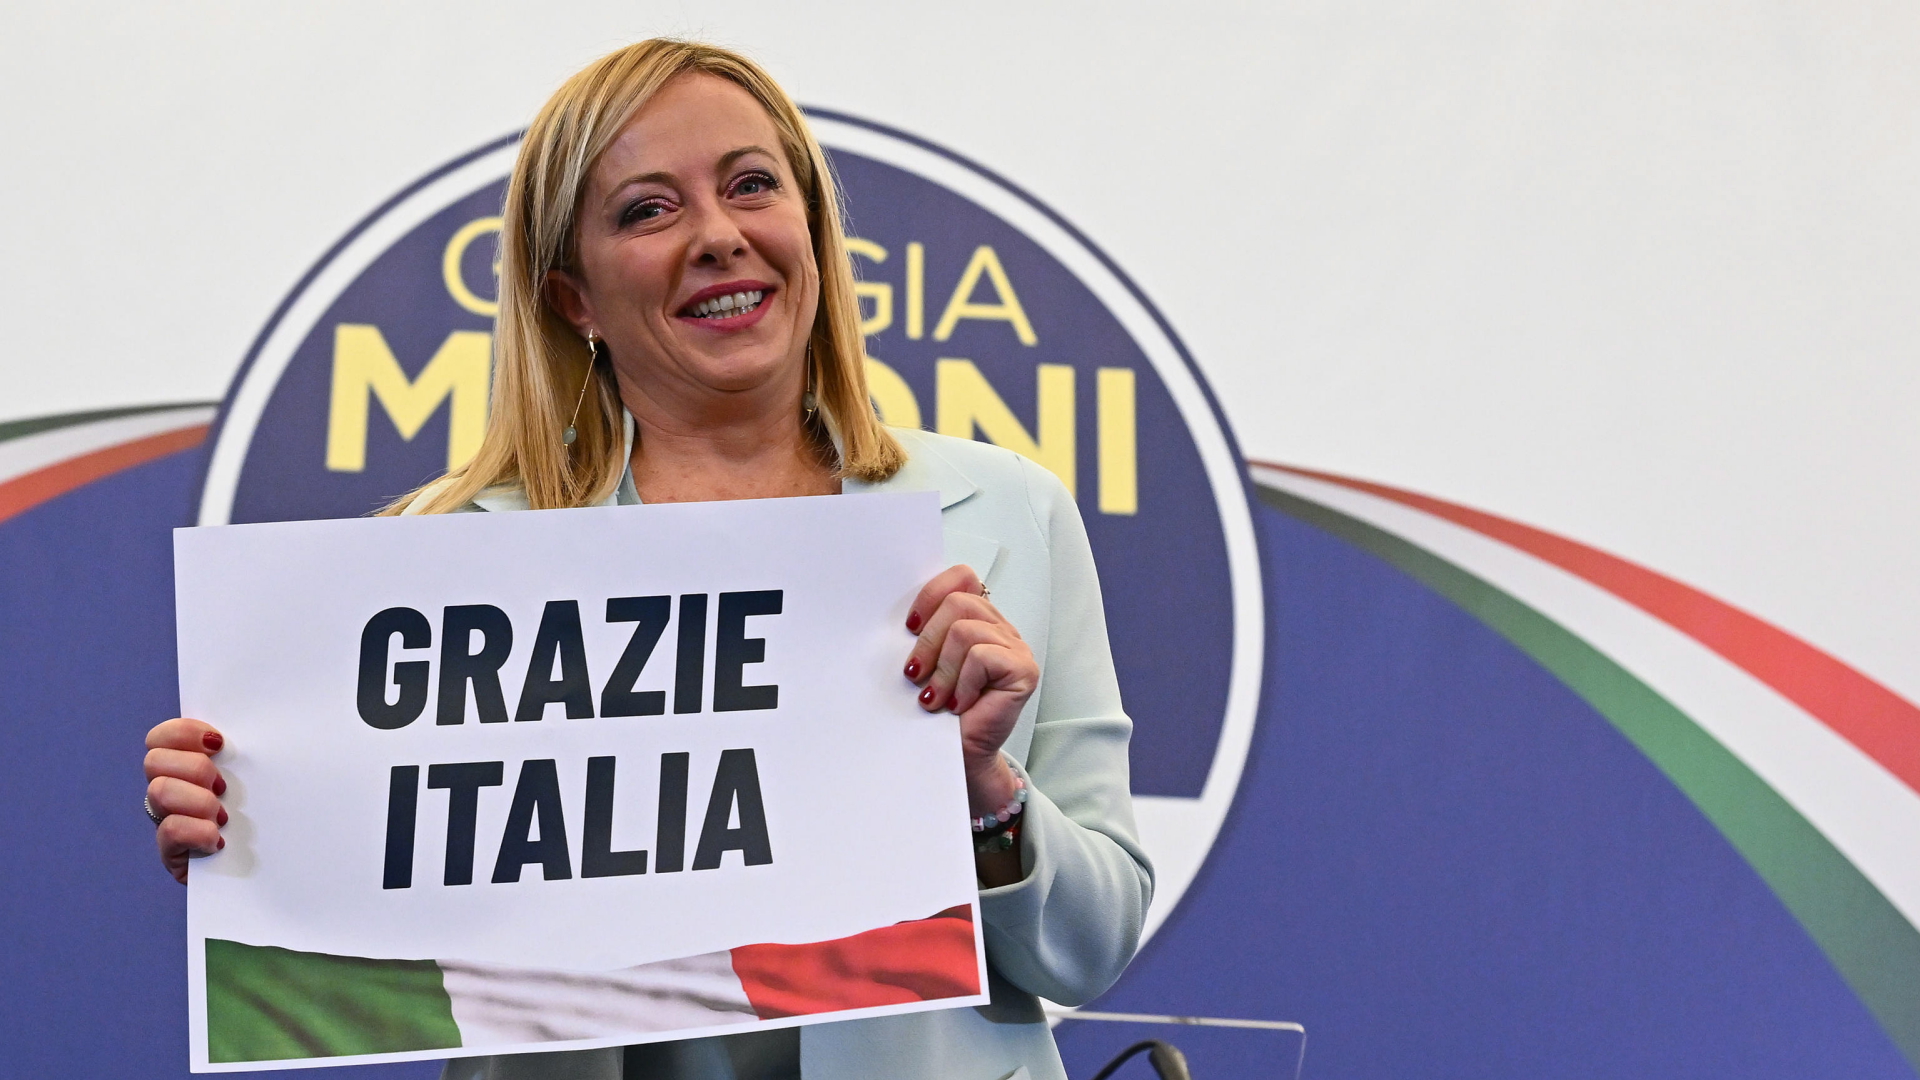 Elezioni parlamentari in Italia: la destra radicale festeggia la “Notte del Pride”